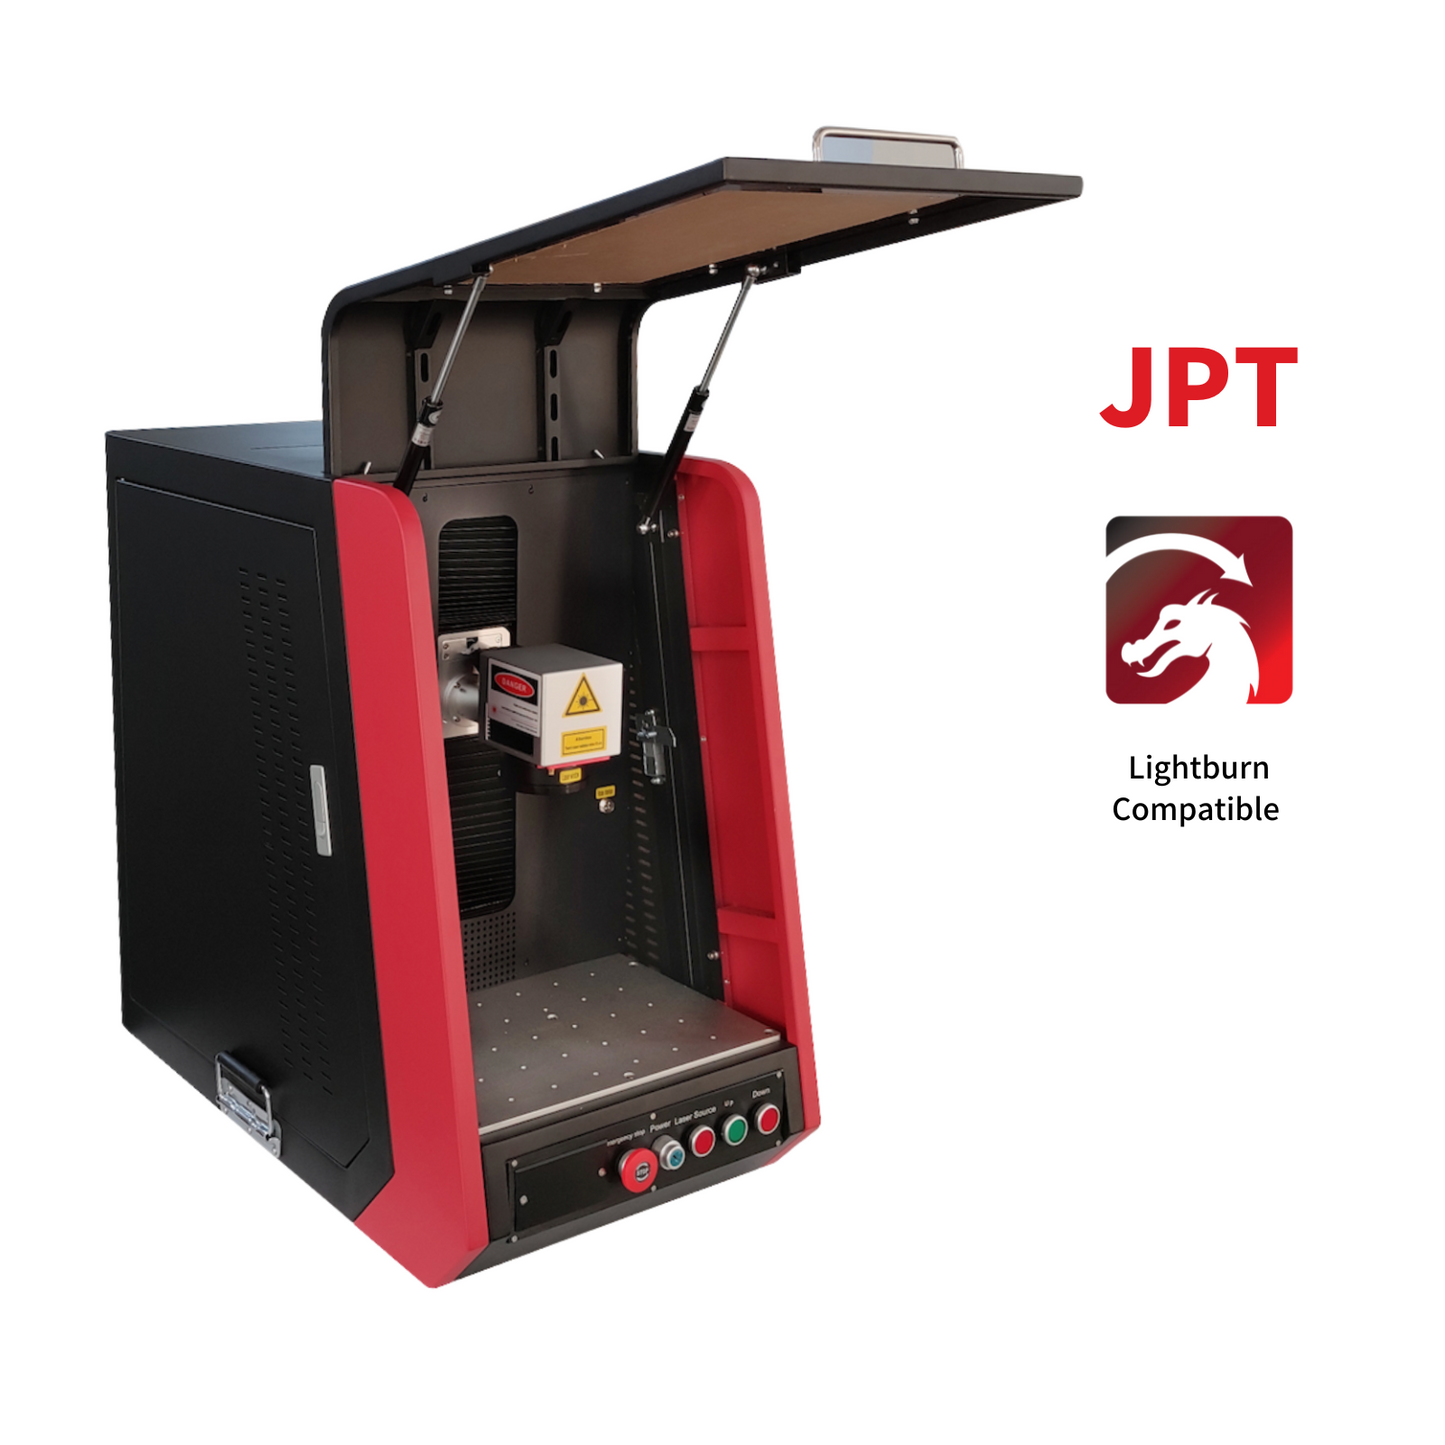 50-W-JPT-Lasergravierer mit integrierter Fasermarkierungsmaschine vom Typ A für die Tiefengravur von Metall